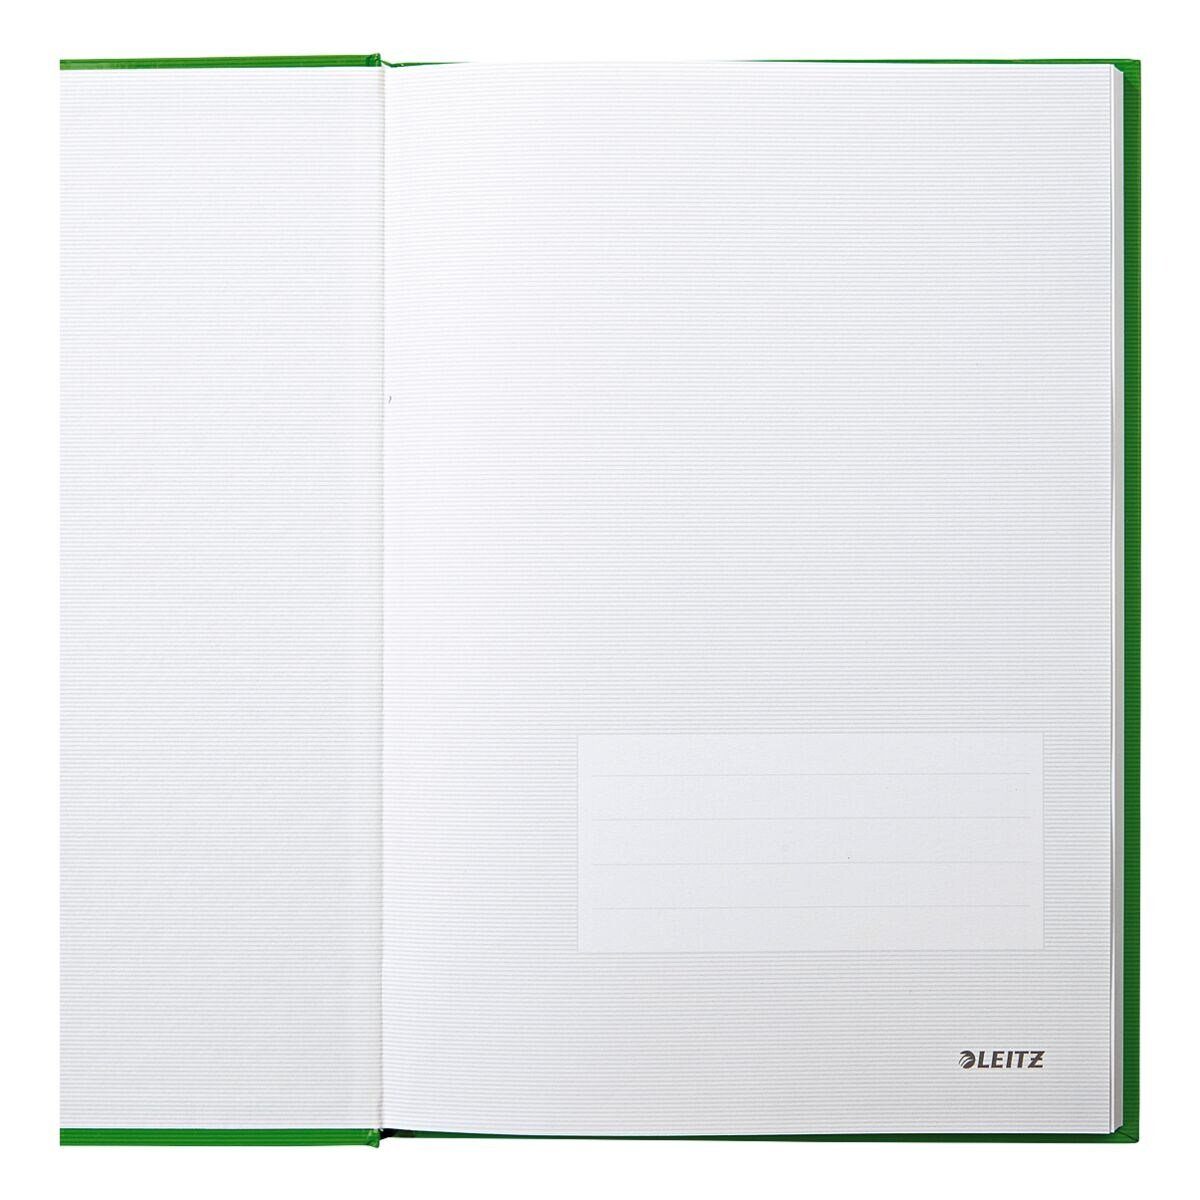 Notizbuch mit kariert, hellgrün 4666, Introseiten, LEITZ Hardcover Solid